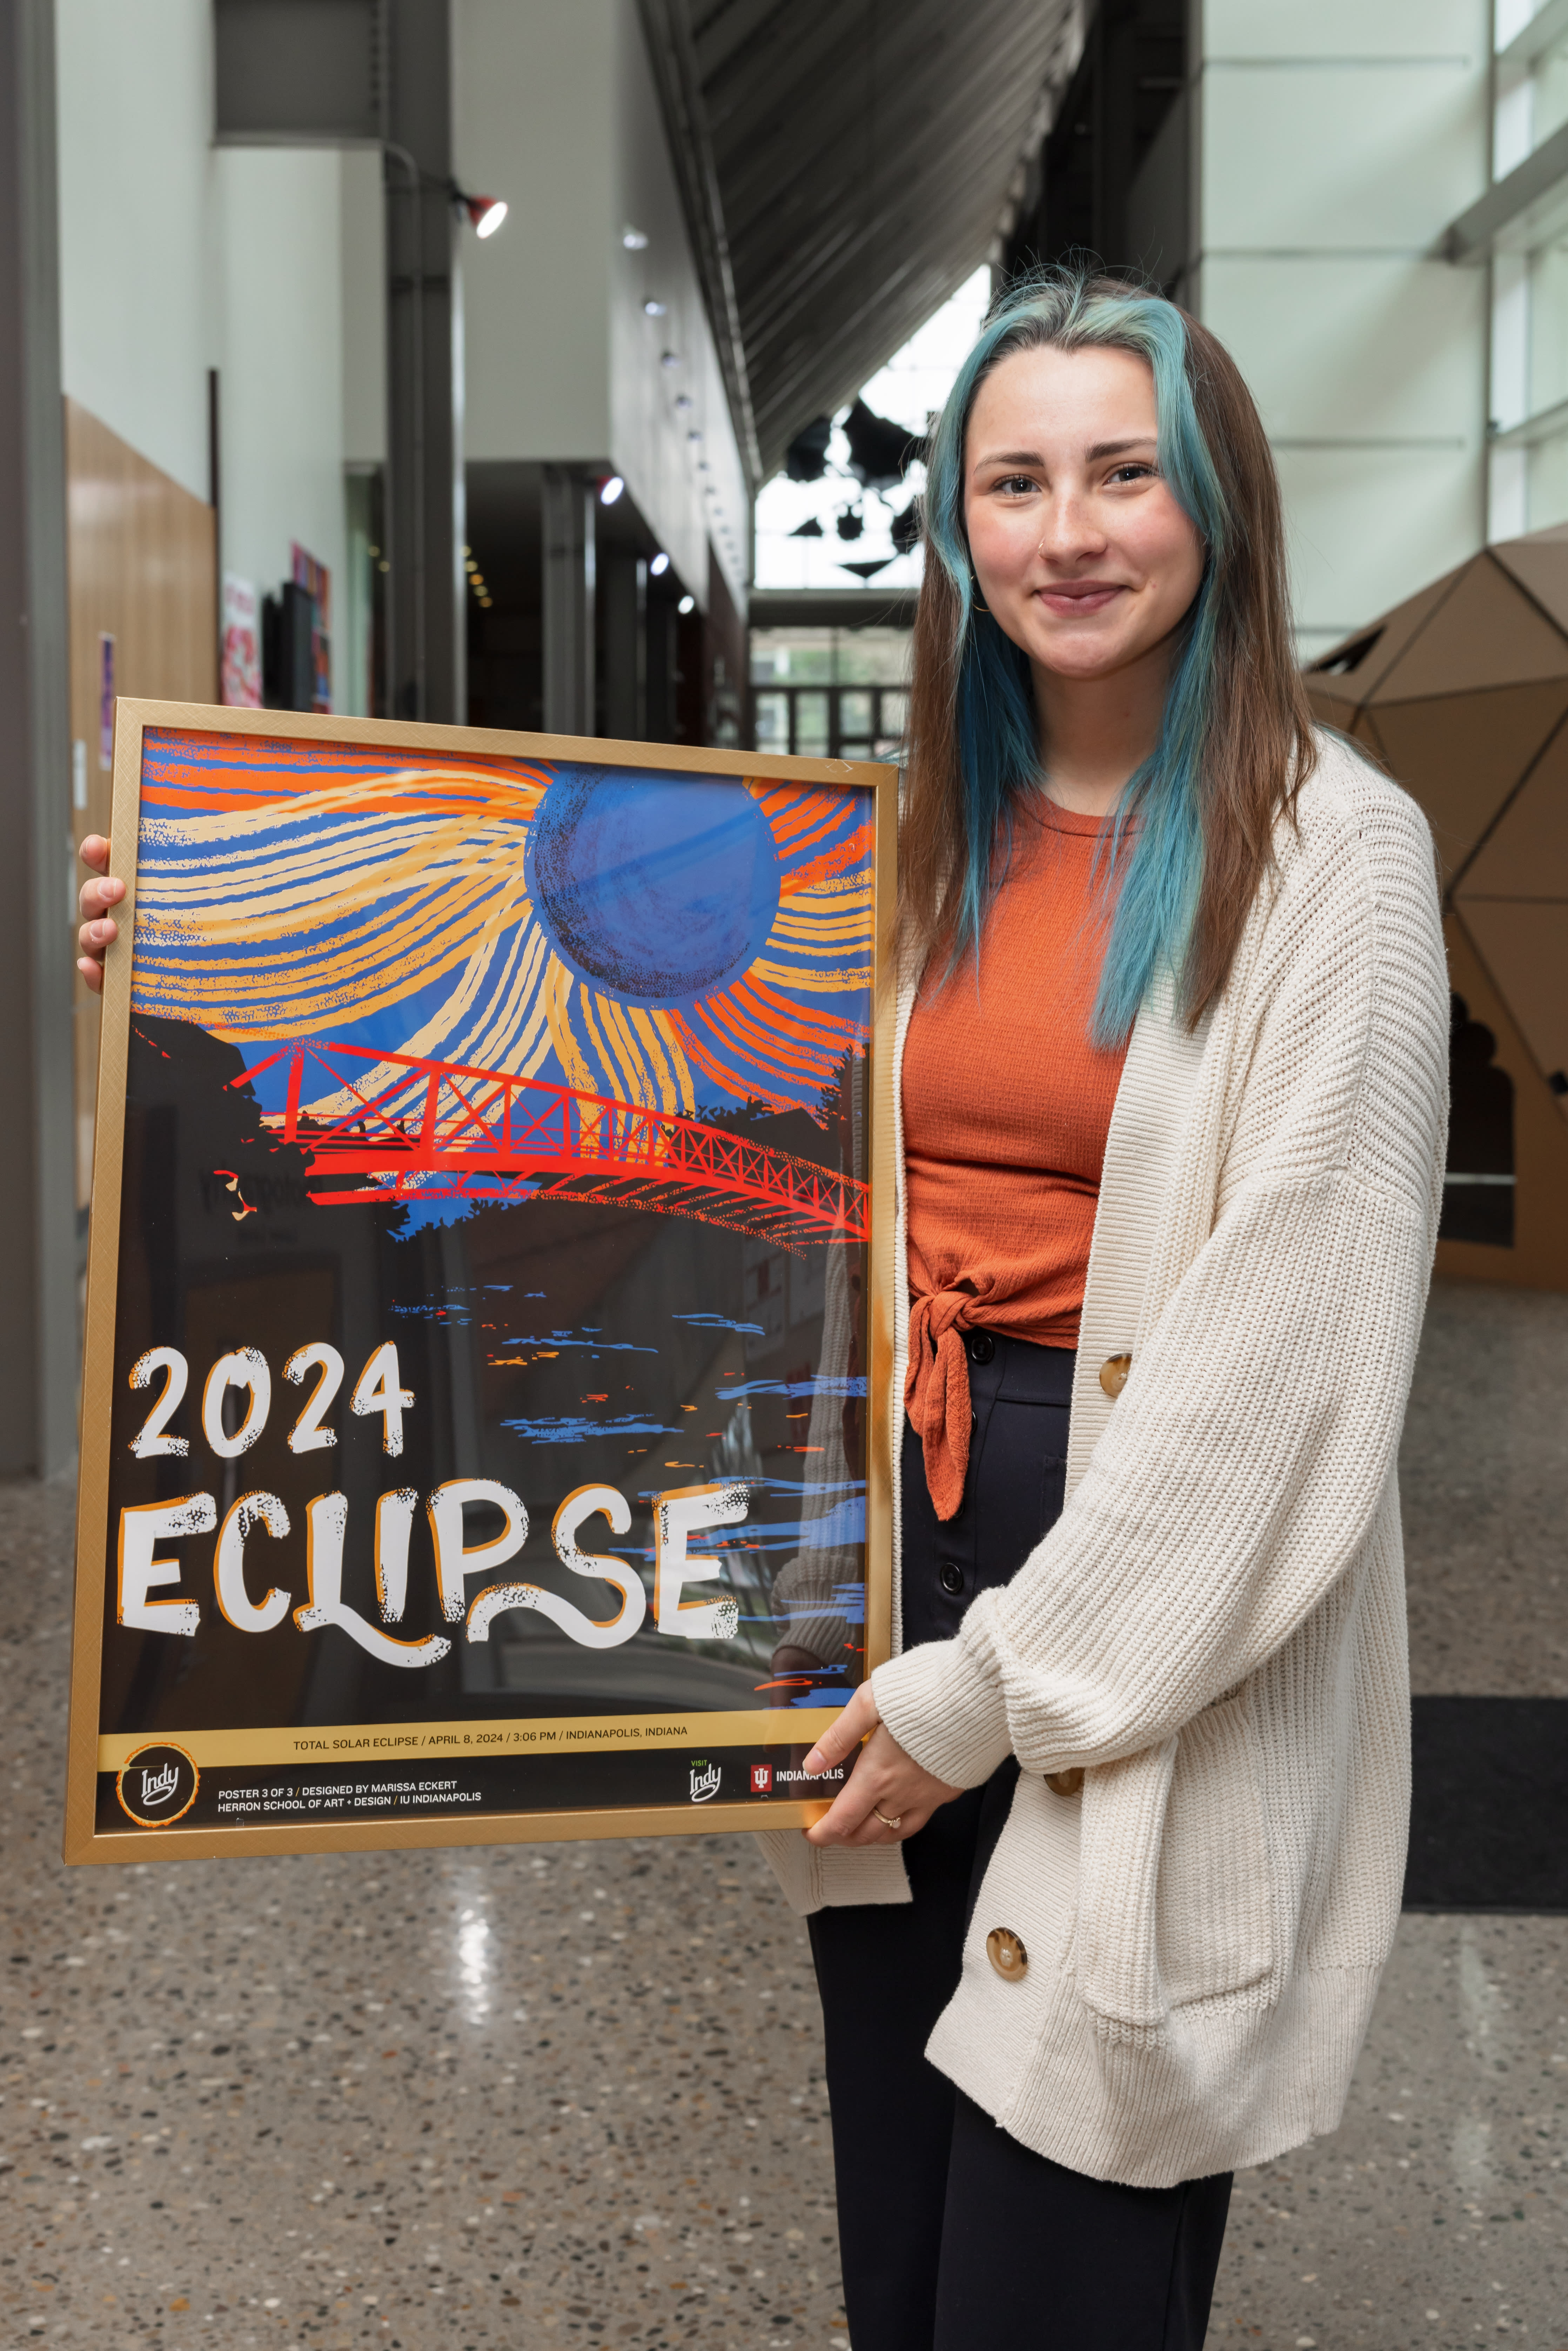 Marissa Eclipse Poster